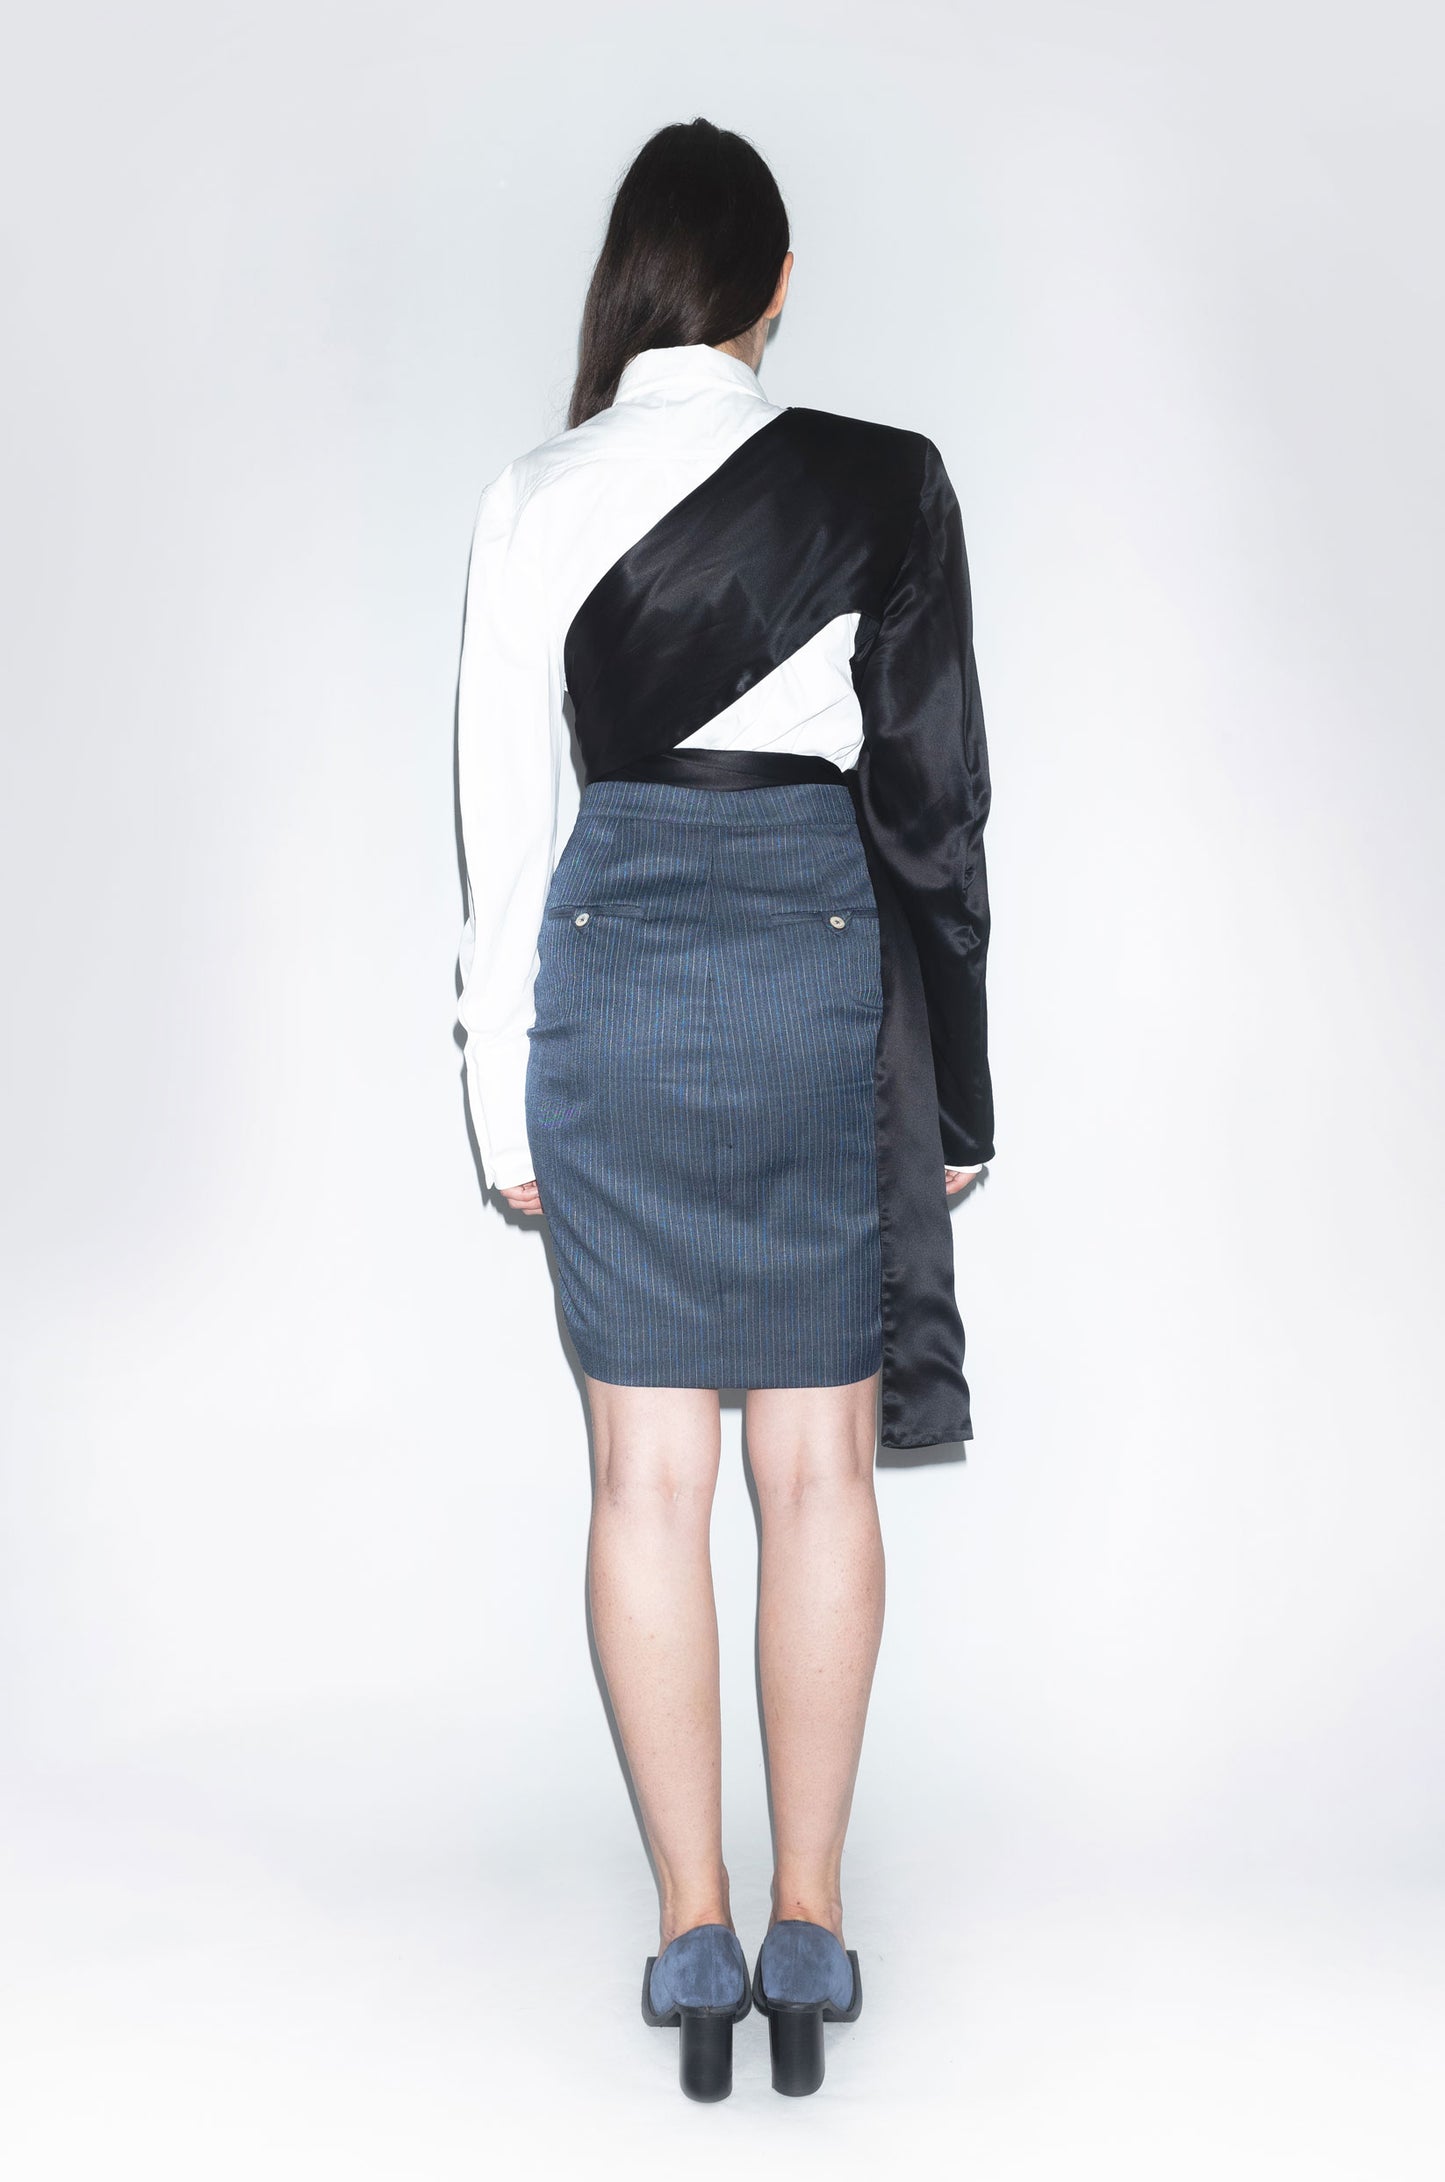 Archive Racing Short Warped Elastic Wool Skirt in Blue Pinstripe